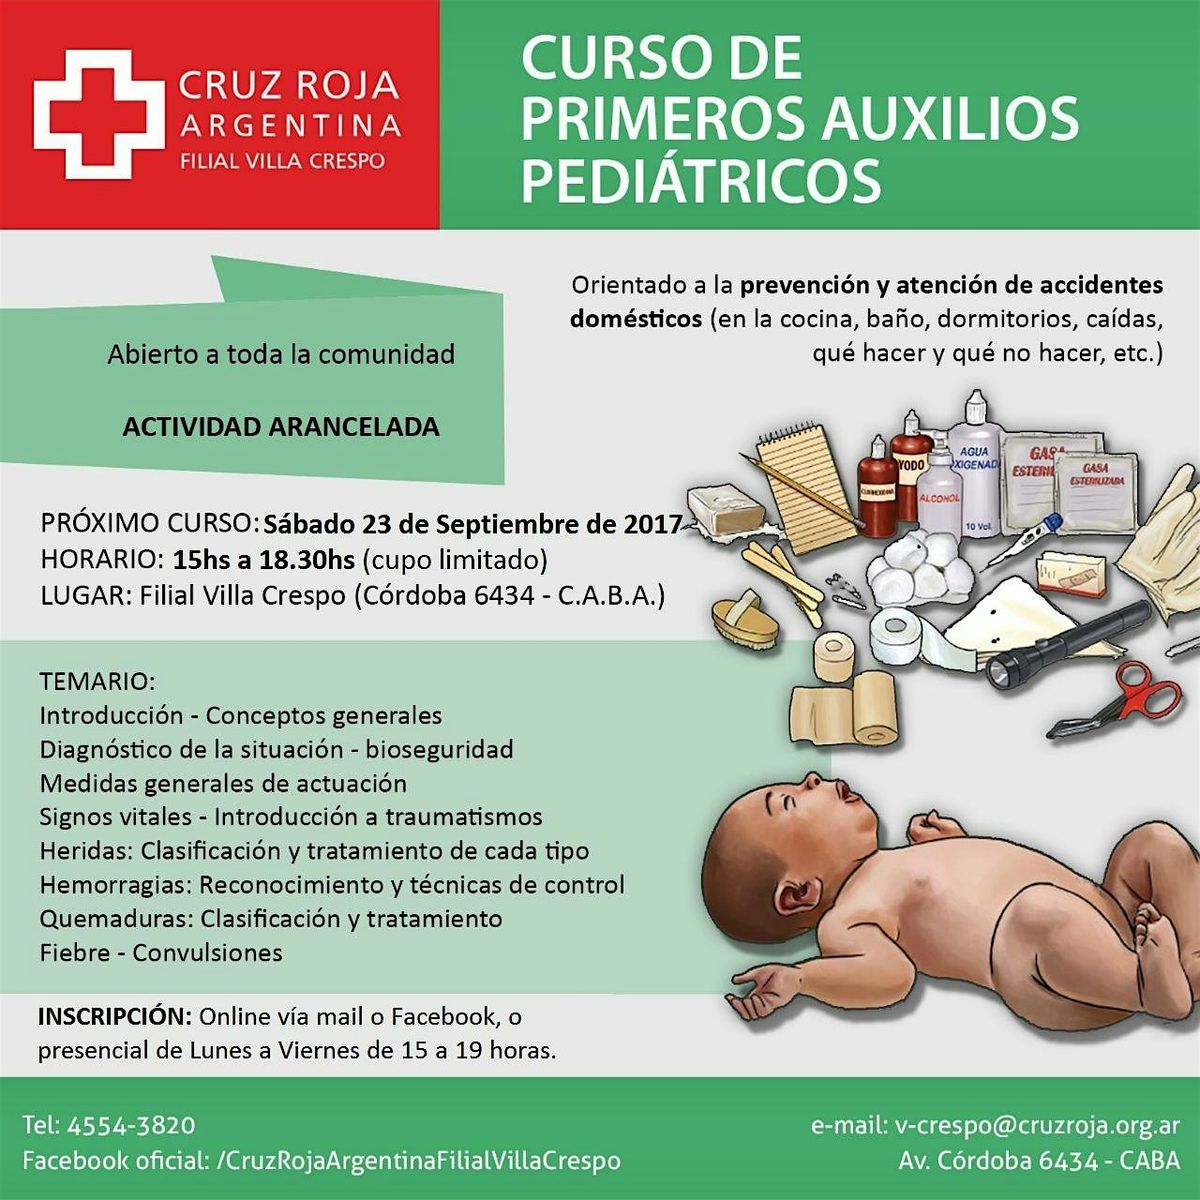 Curso de RCP en Cruz Roja (mi\u00e9rcoles 22-05-24) 18 a 22 hs - Duraci\u00f3n 4 hs.